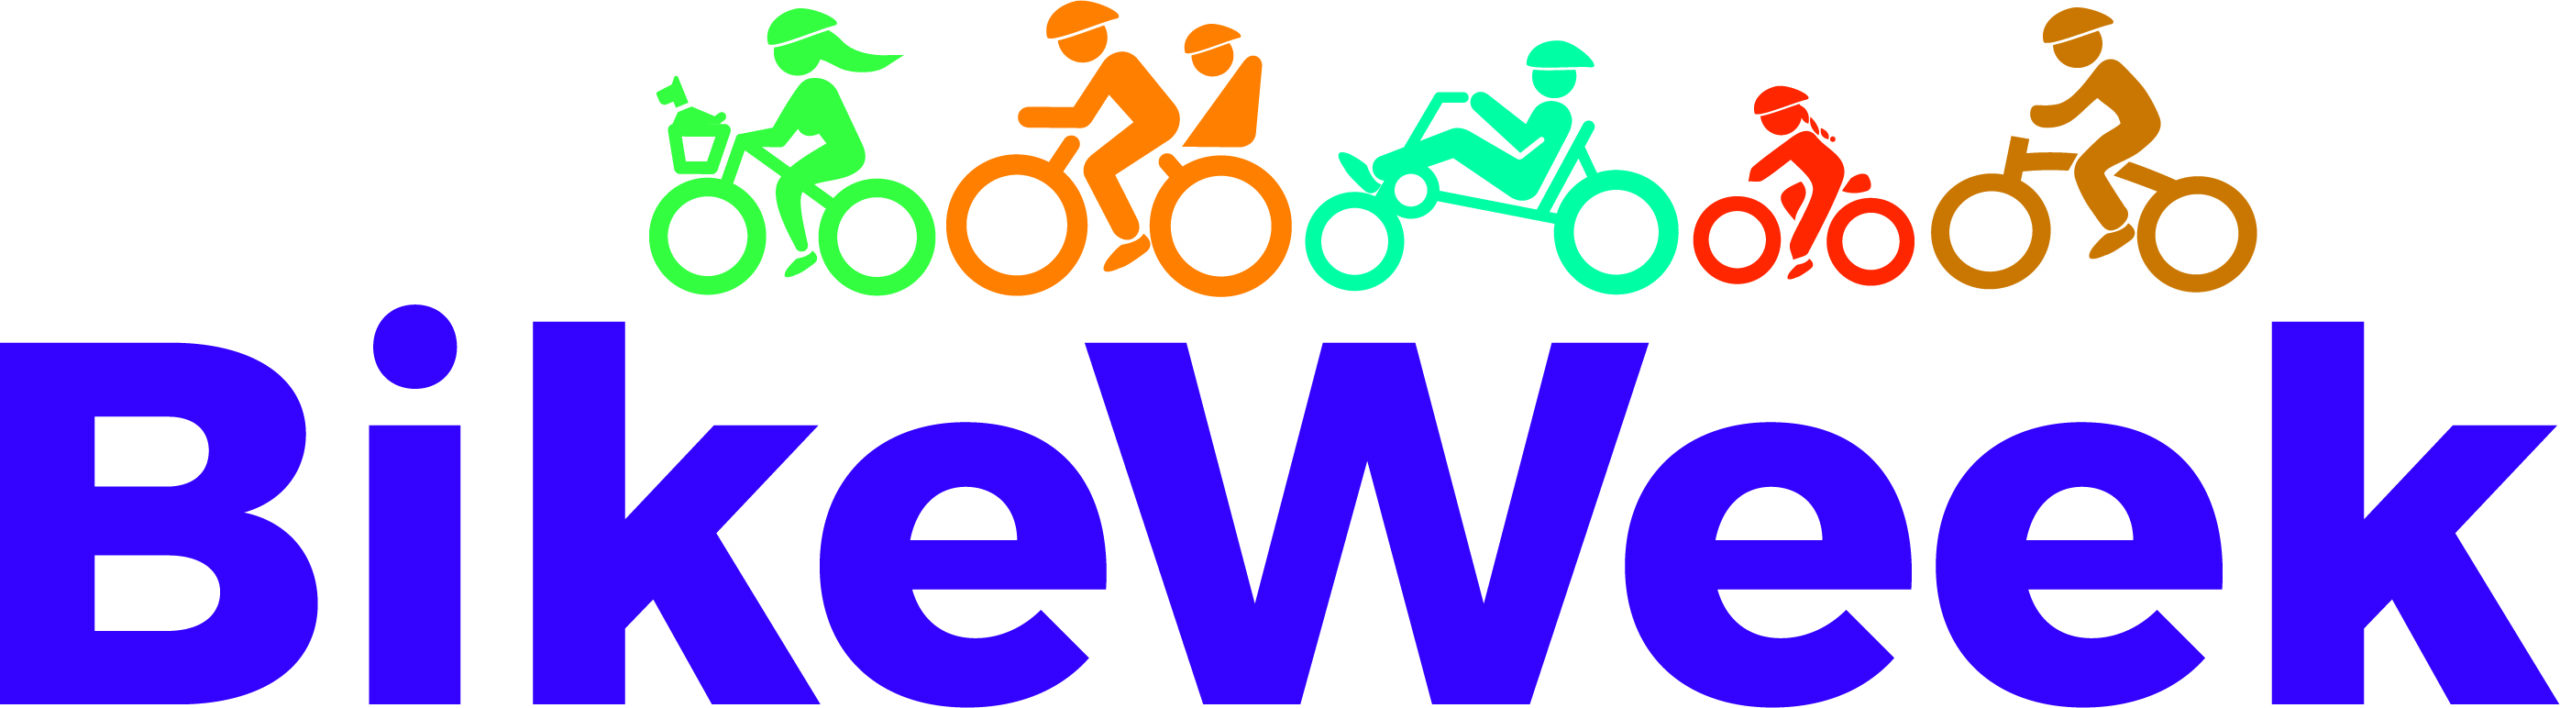 BikeWeekLogo-scaled